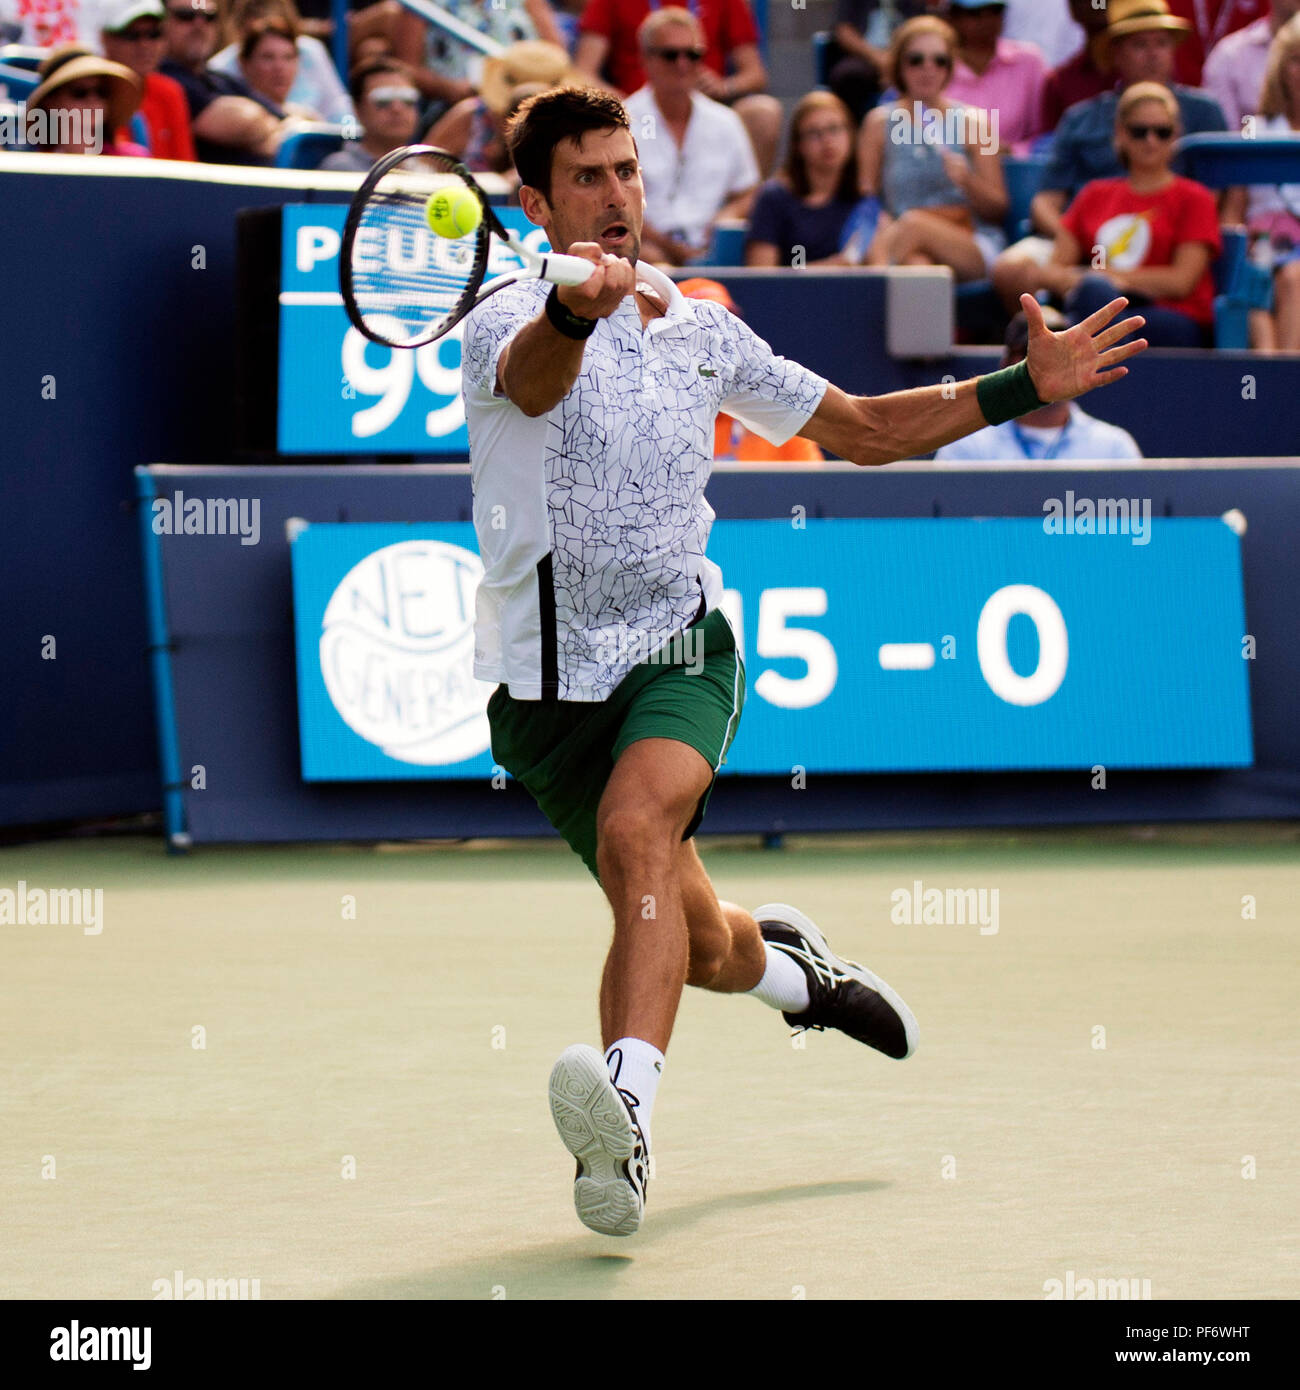 Mason, Ohio, USA. 19 août 2018 : Novak Djokovic (SRB) frappe la balle à Roger Federer (SUI) à la région du sud-ouest de l'ouvrir à Mason, Ohio, USA. Brent Clark/Alamy Live News Banque D'Images